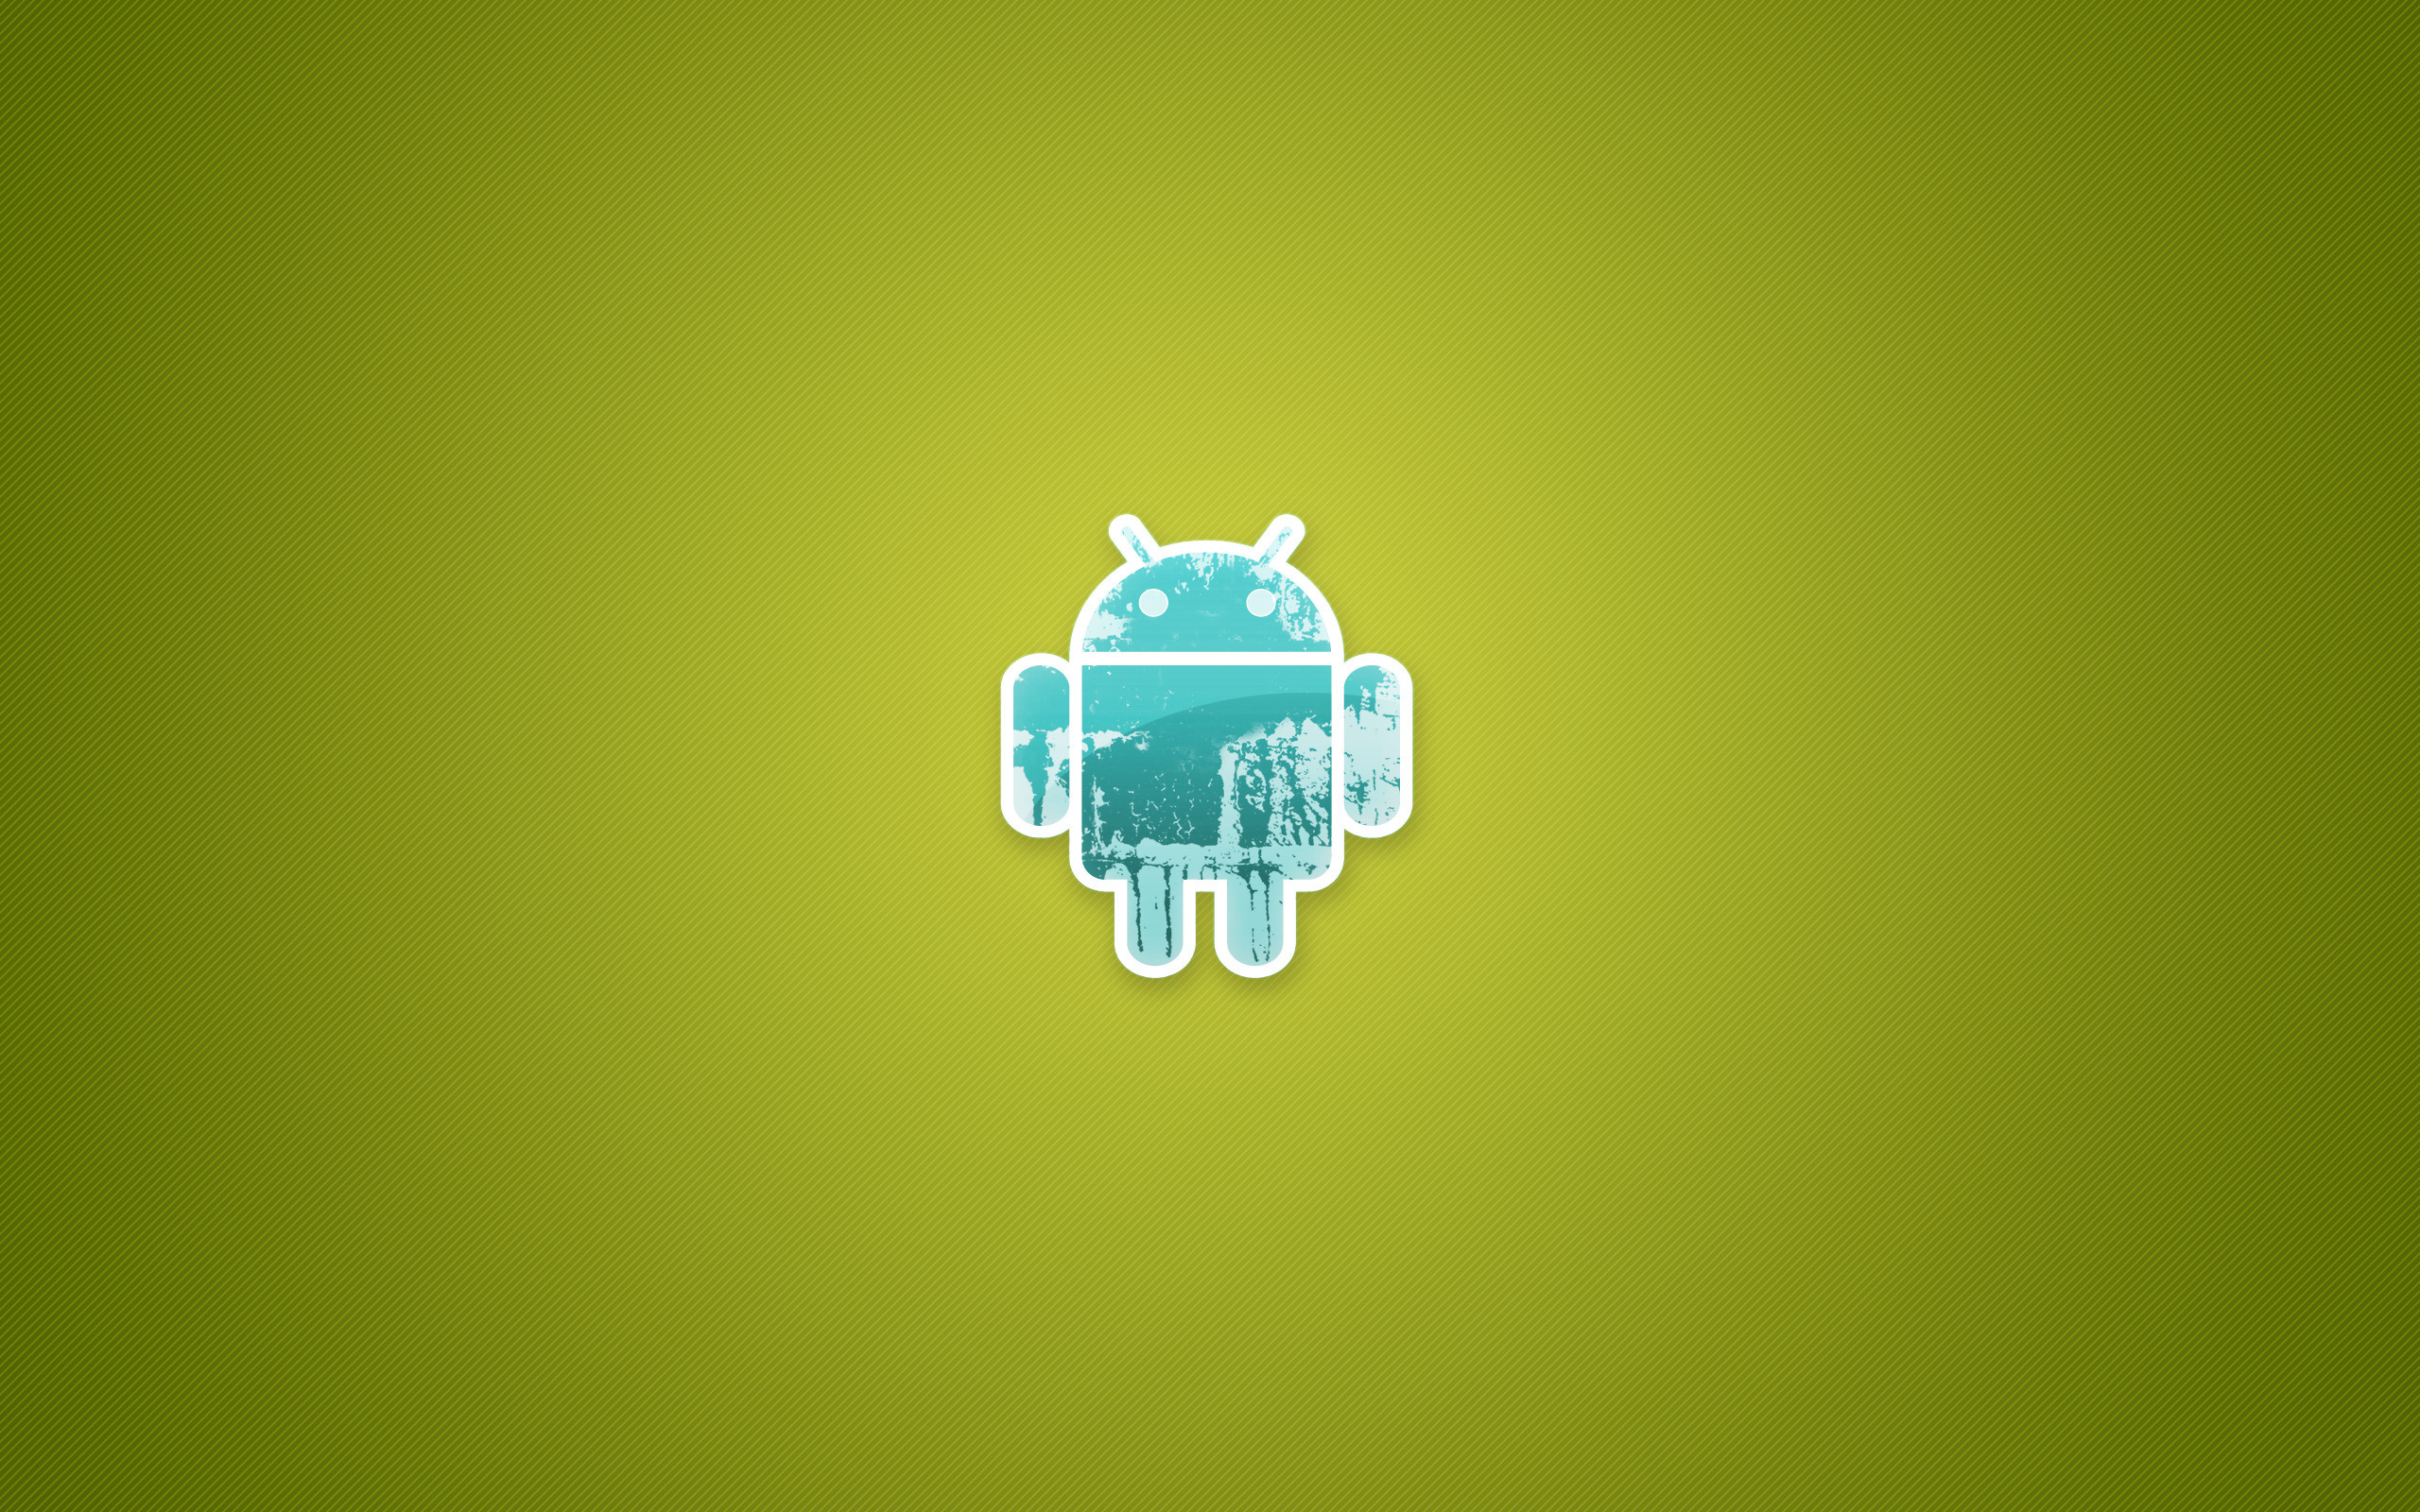 Обои андроида 10. Обои на андроид. Обои на рабочий стол Android. Логотип андроид. Обои на планшет андроид.